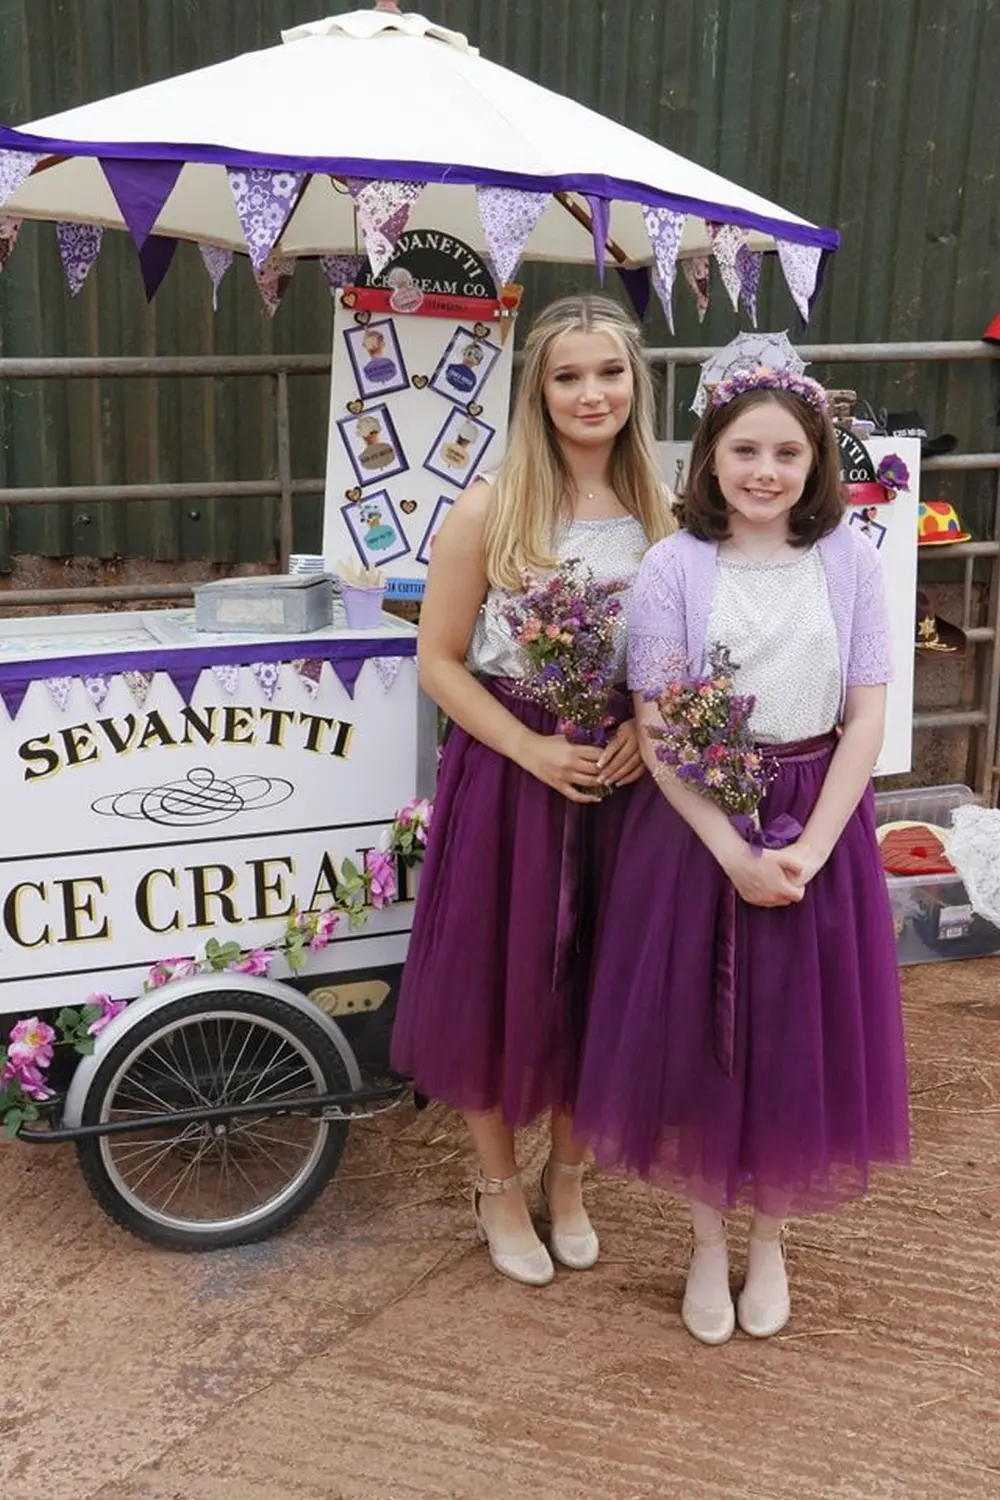 Sevanetti Ice Cream Bikes two girls in Purple dress